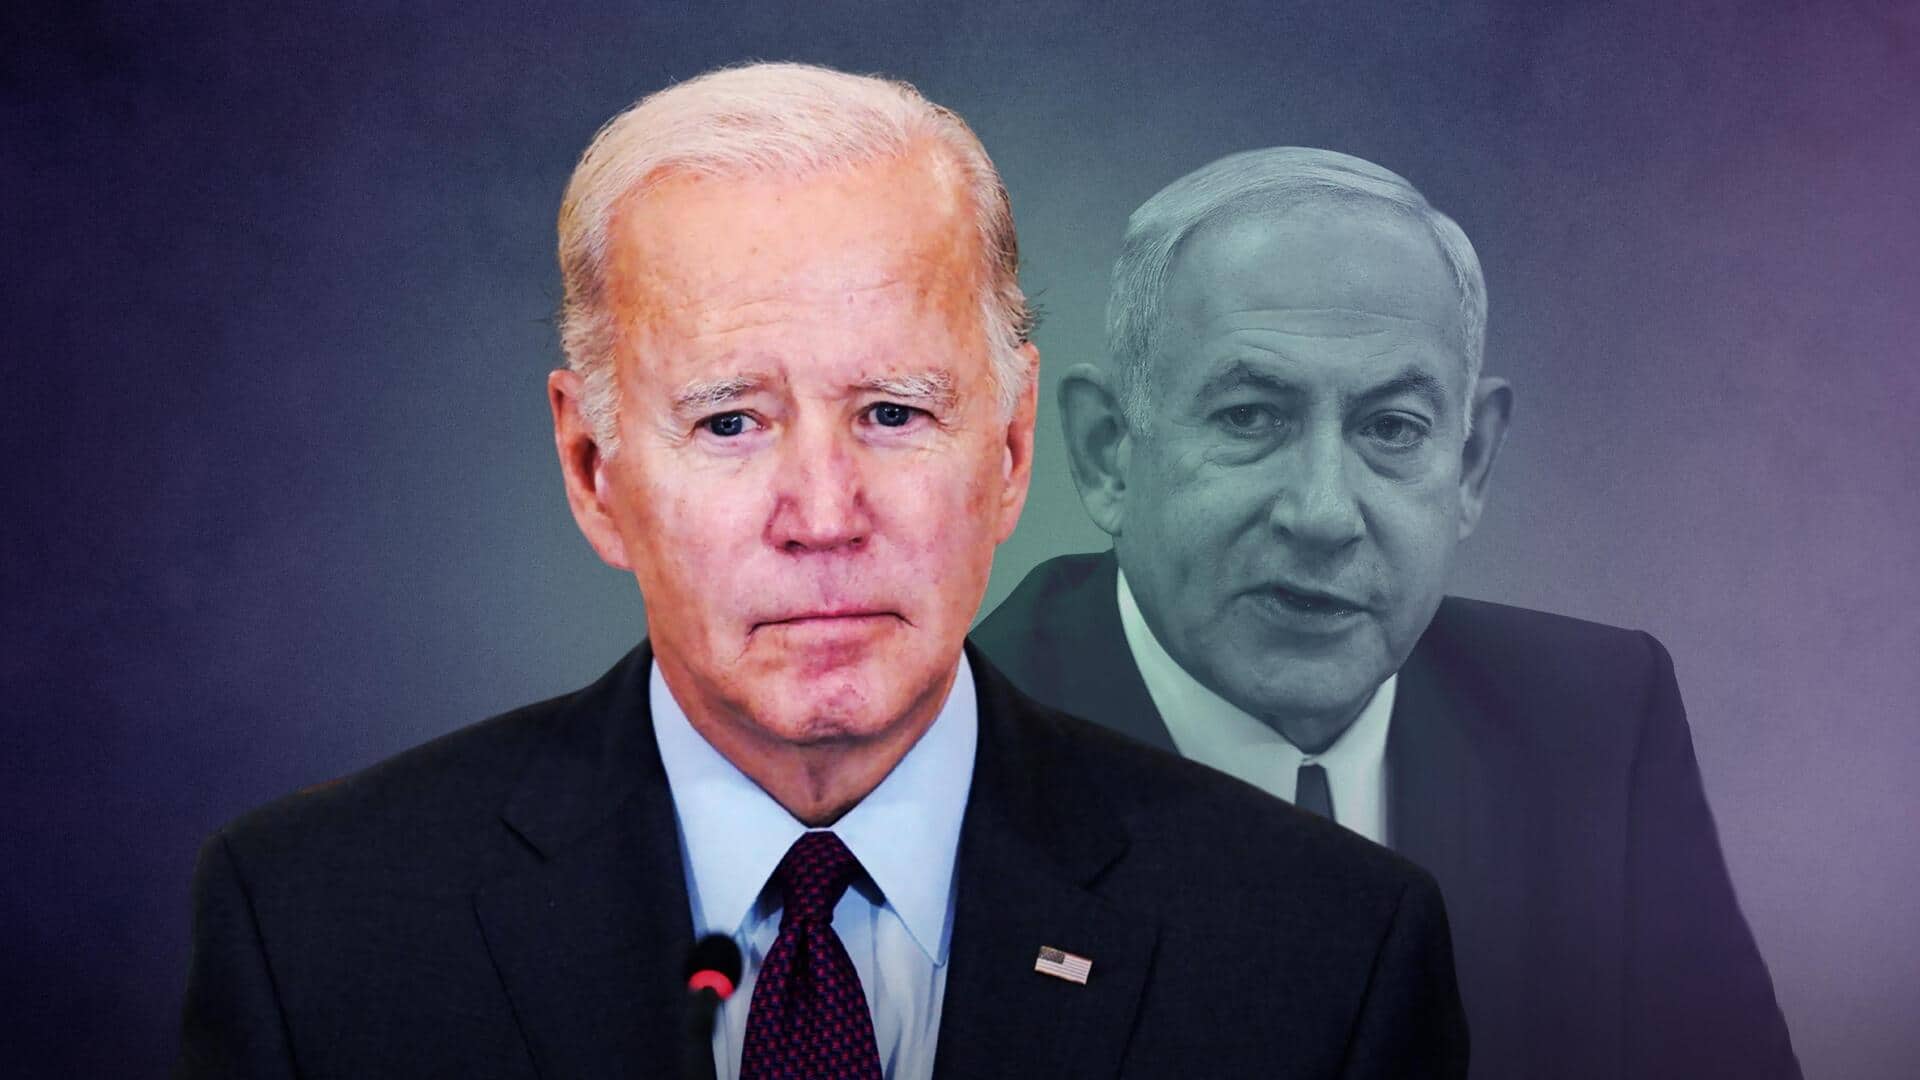 Netanyahu making a 'mistake' on Gaza, says Biden